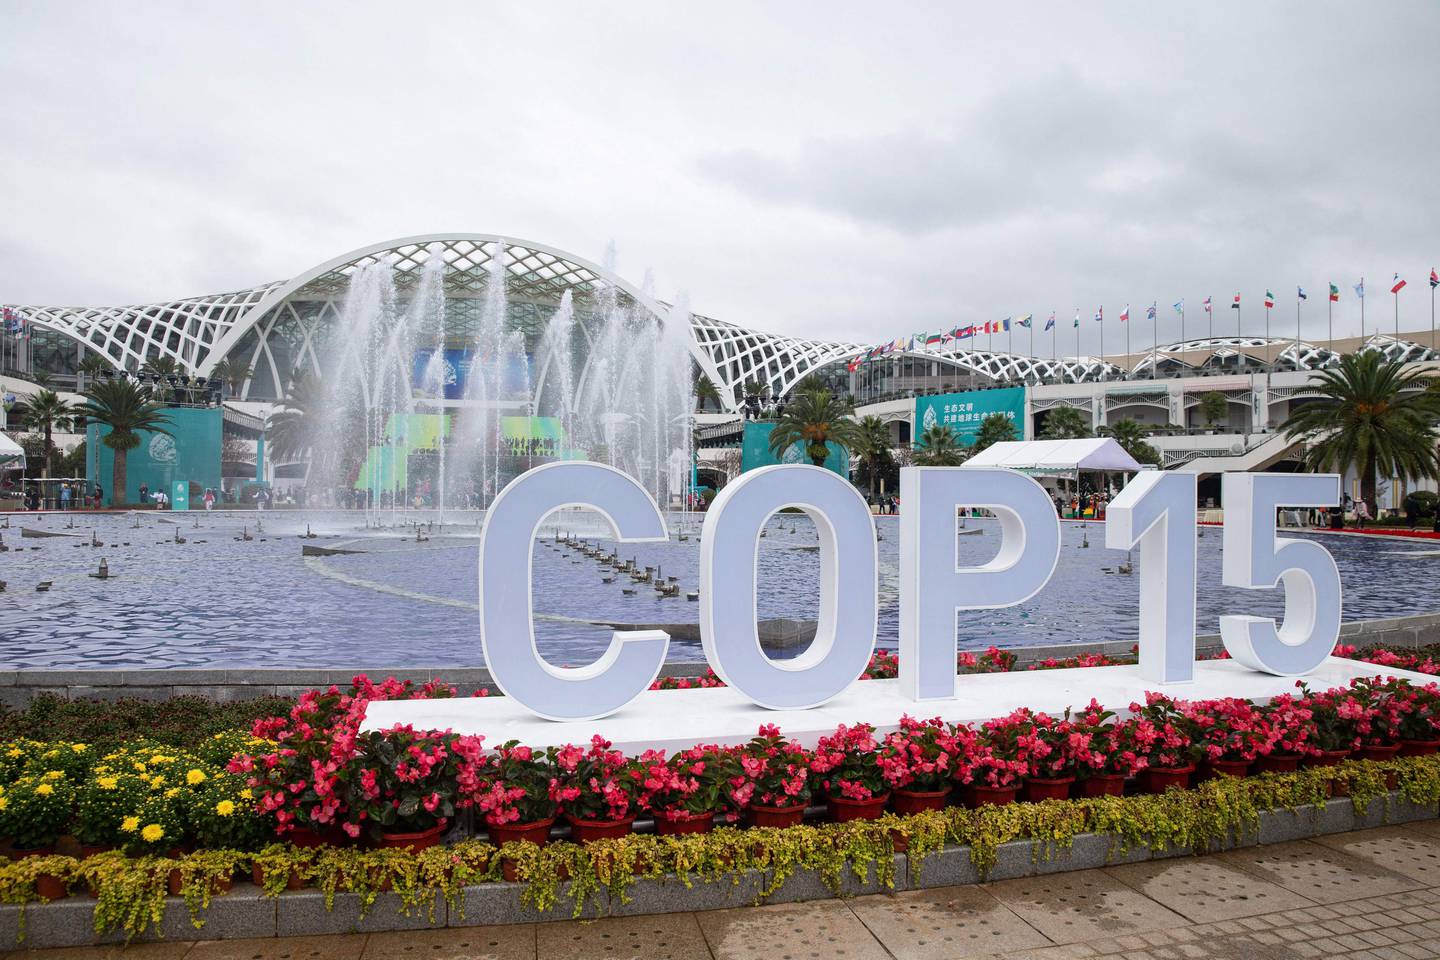 Det kommende toppmøtet i Kunming om en naturavtale, COP 15, har blitt utsatt tre ganger på grunn av koronaen, men nå skal representanter for verdens land endelig møtes der i april.